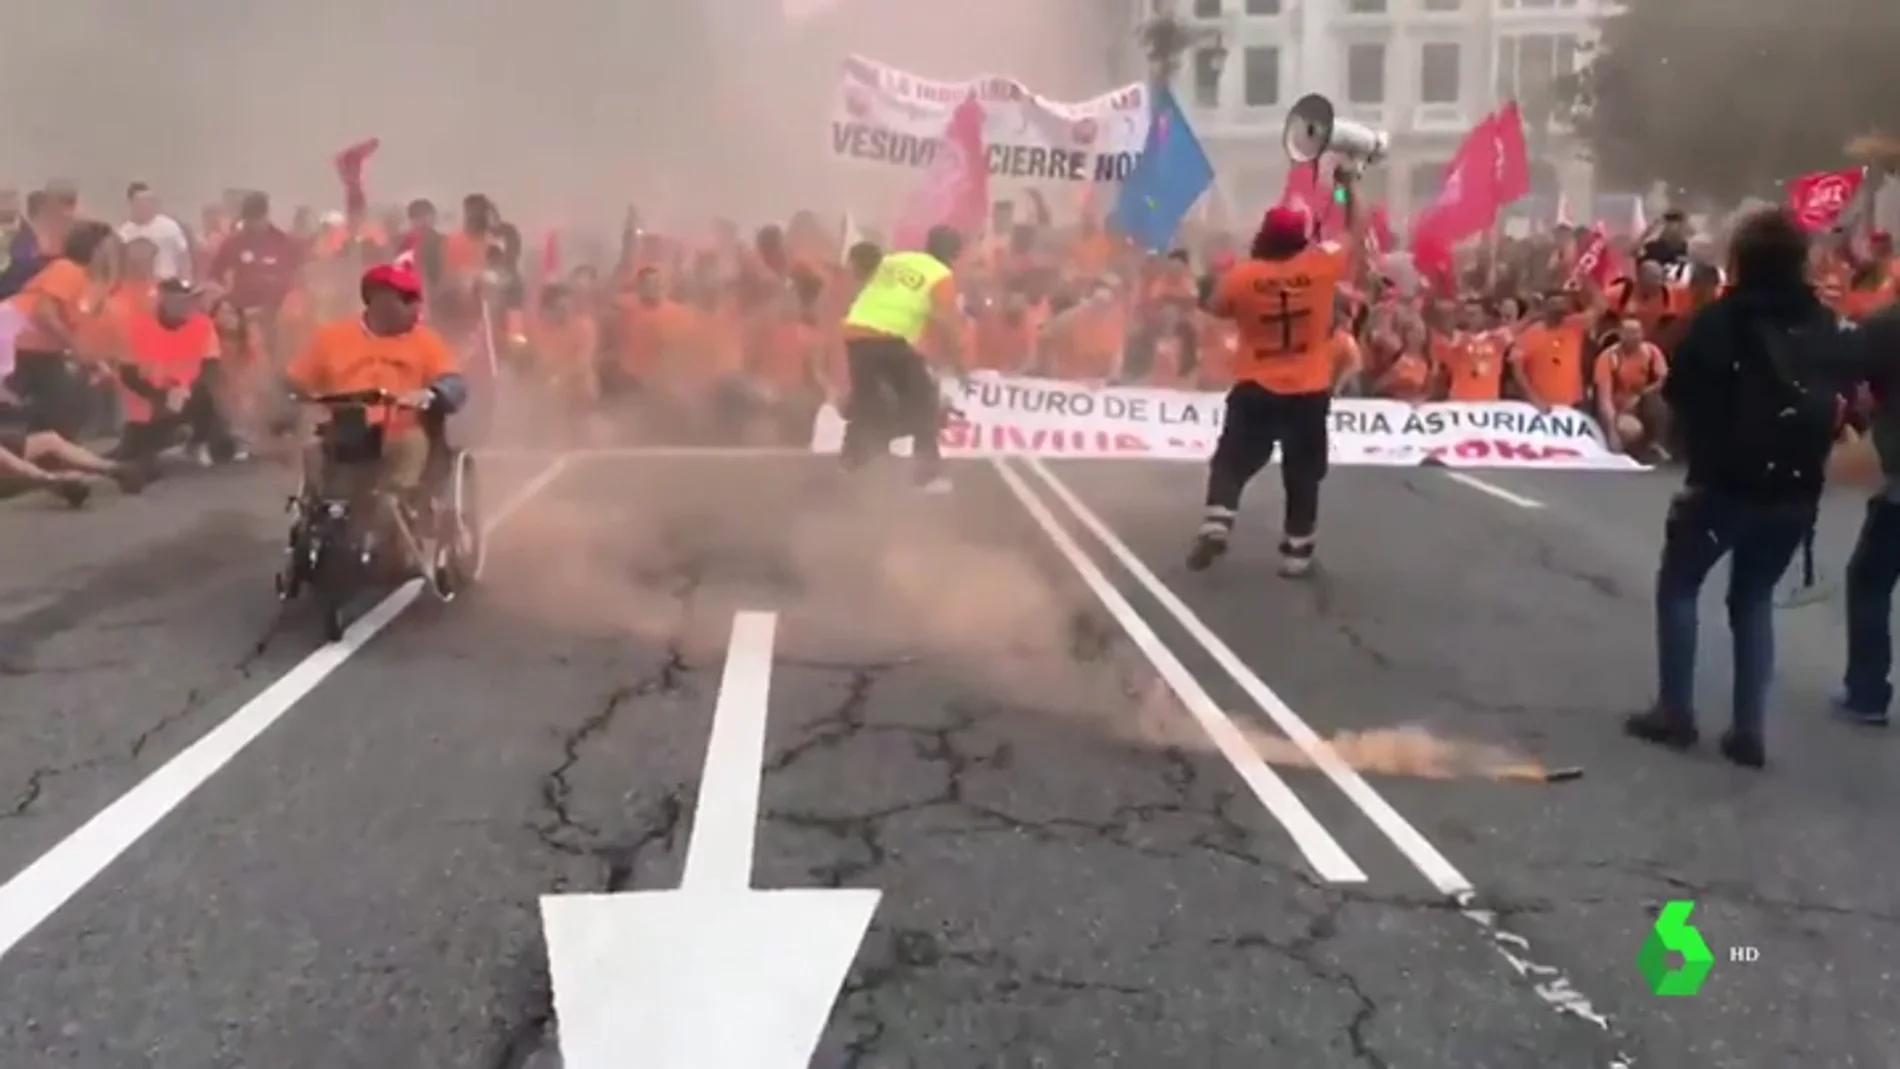 Cientos de trabajadores marchan contra el cierre de Vesuvius